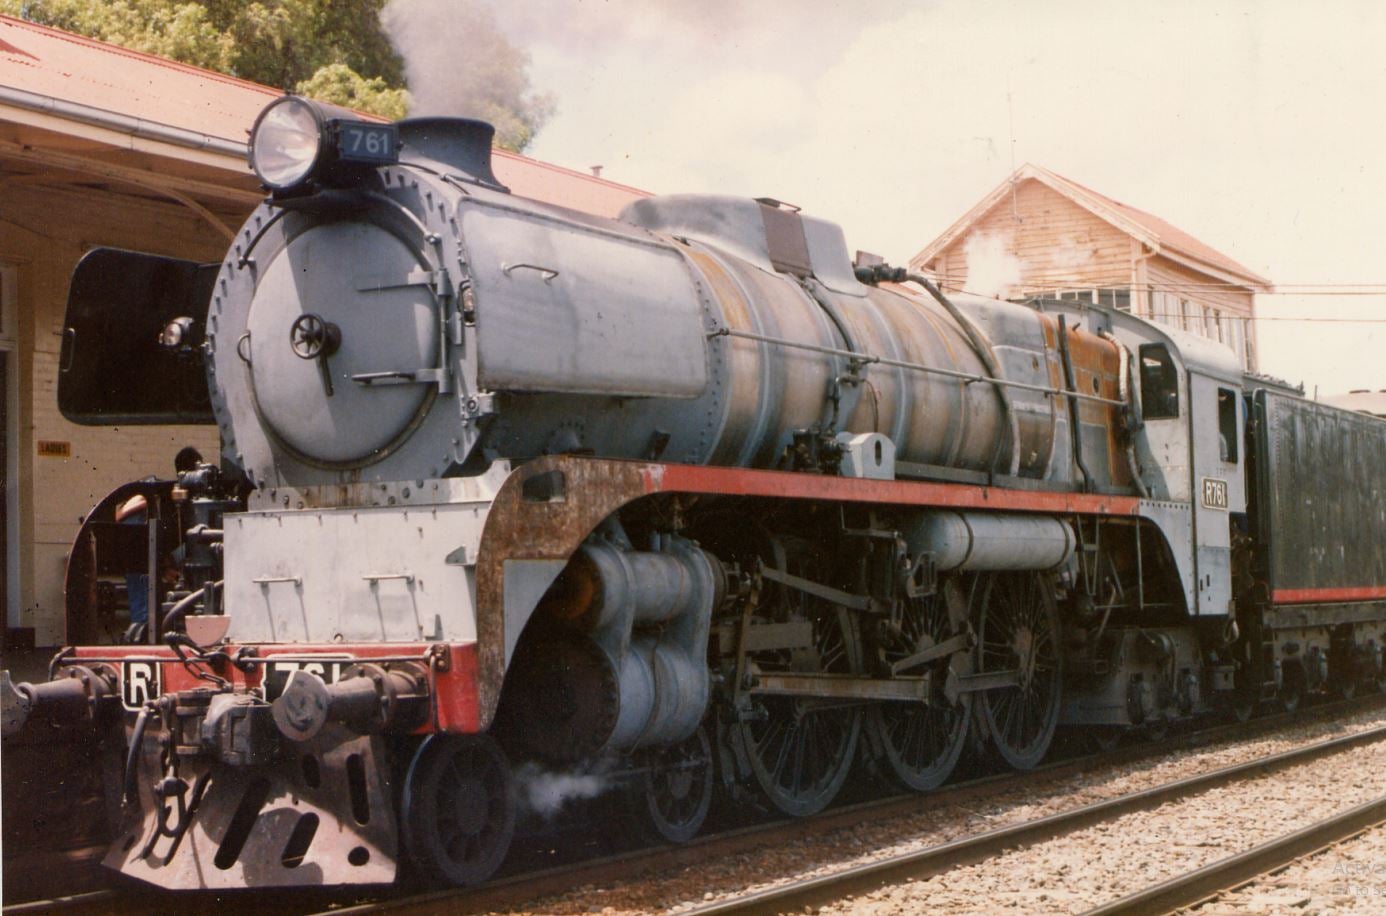 R761 | Steamrail Victoria